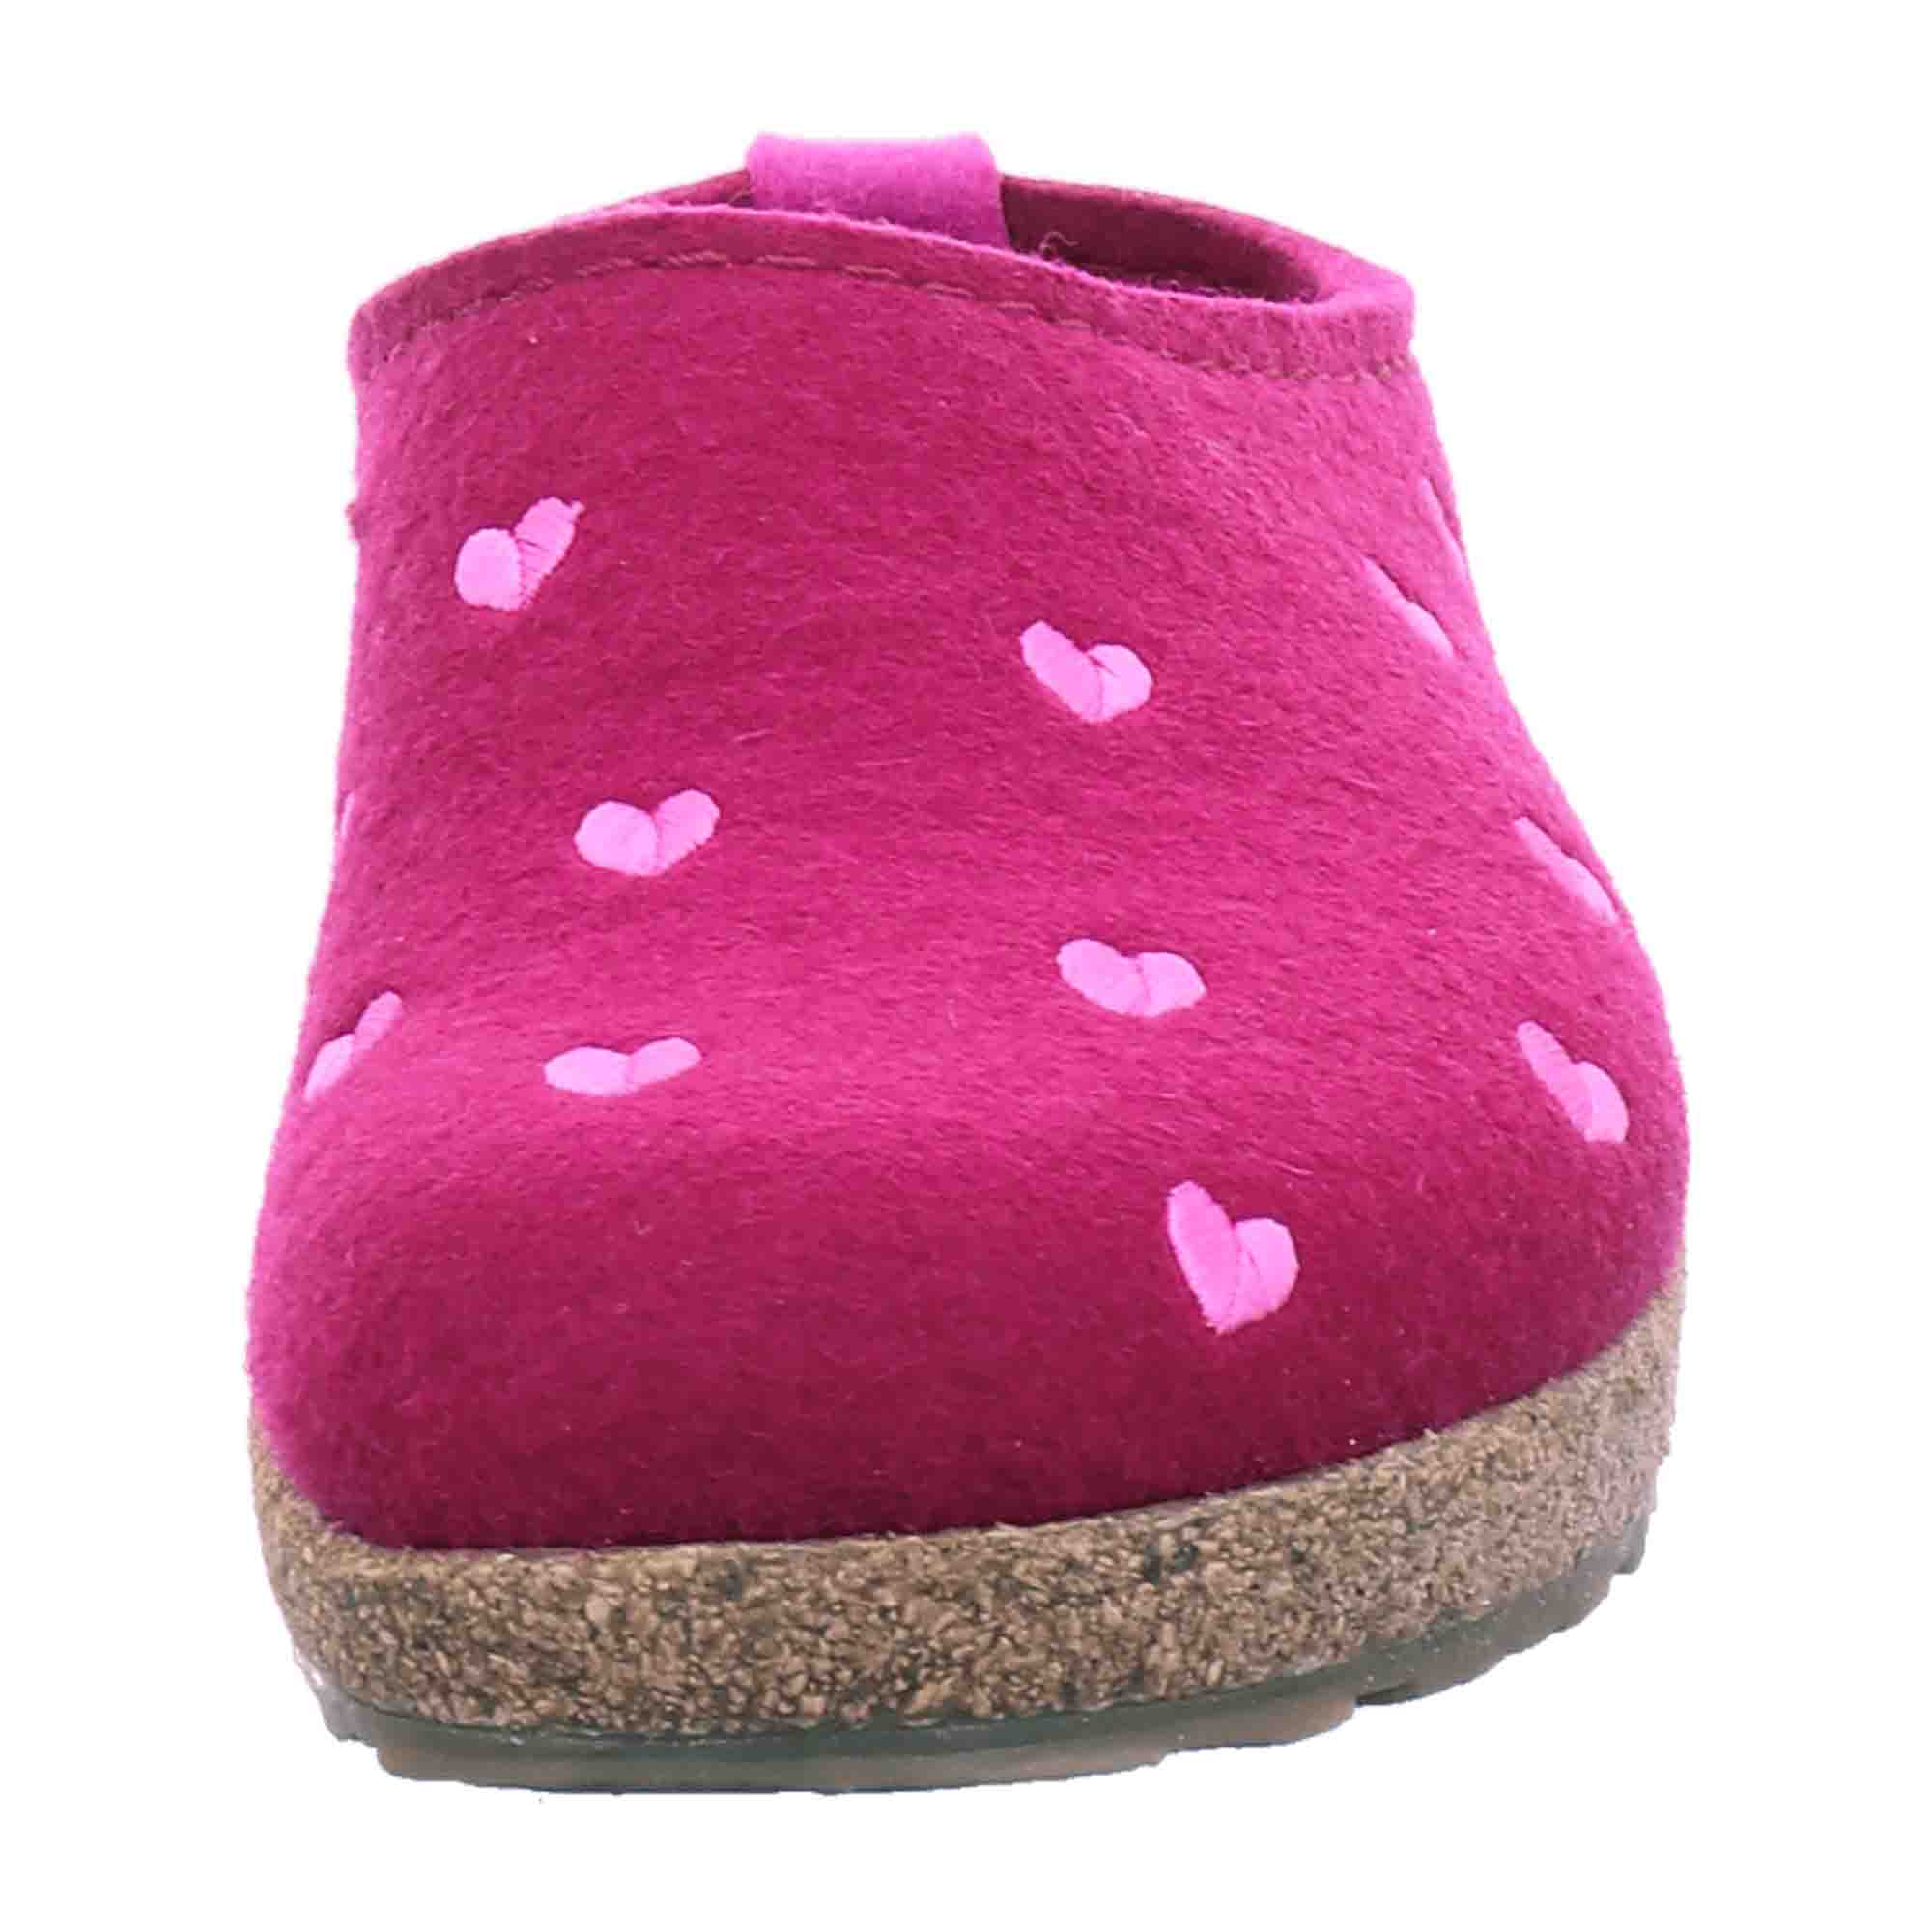 Haflinger Women's Slippers in Pink - Comfortable & Stylish Indoor Footwear